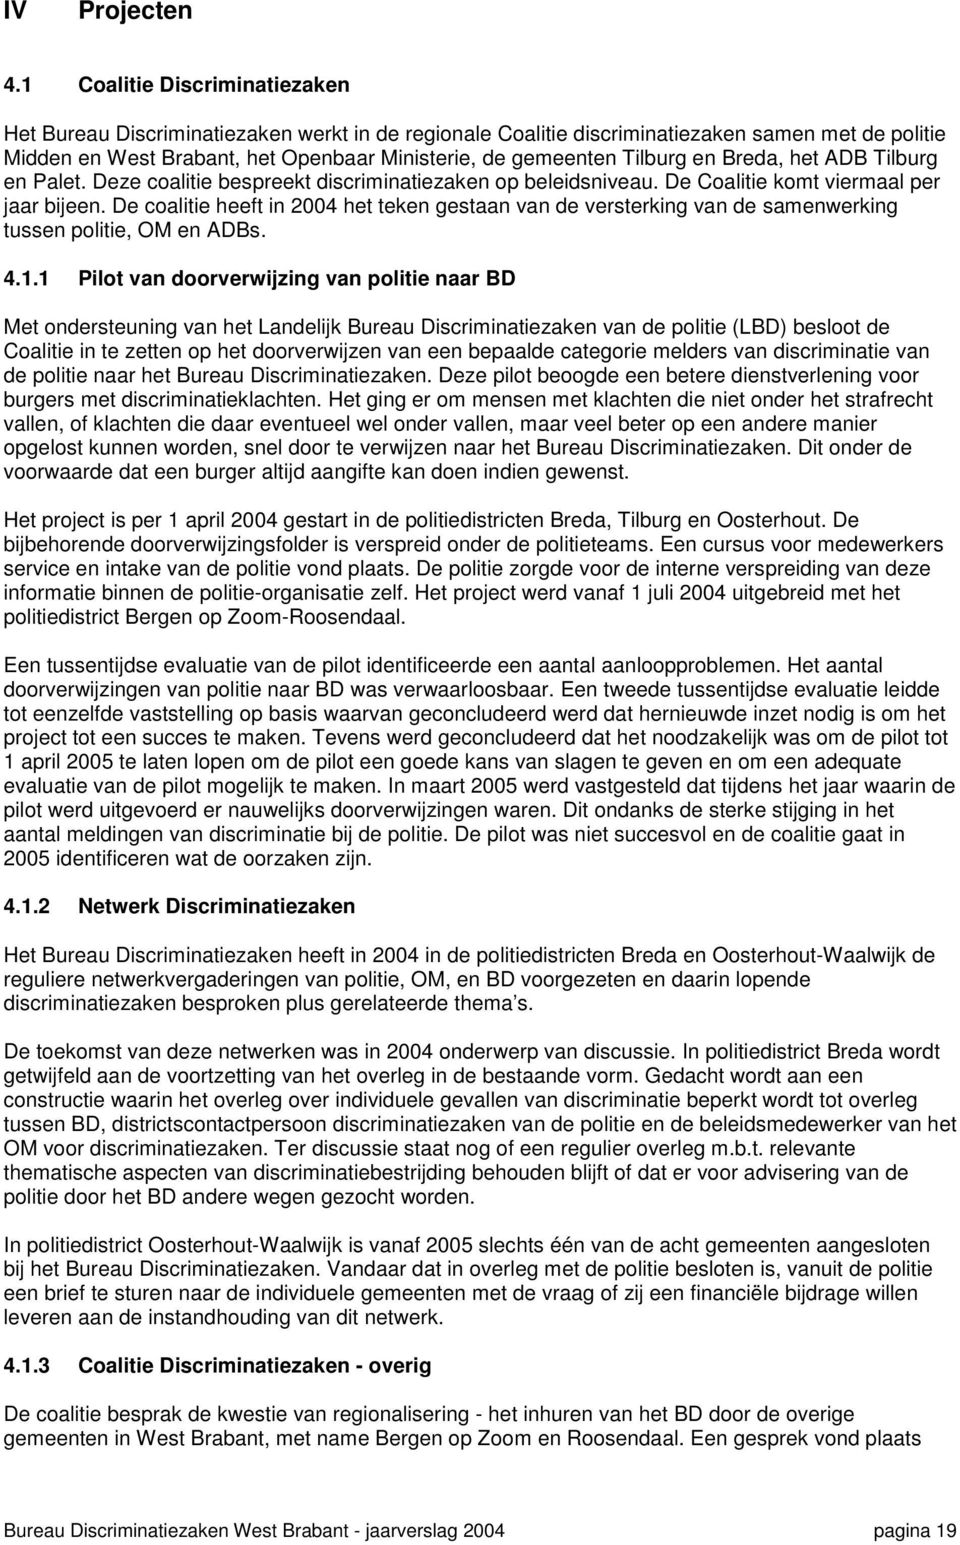 Tilburg en Breda, het ADB Tilburg en Palet. Deze coalitie bespreekt discriminatiezaken op beleidsniveau. De Coalitie komt viermaal per jaar bijeen.